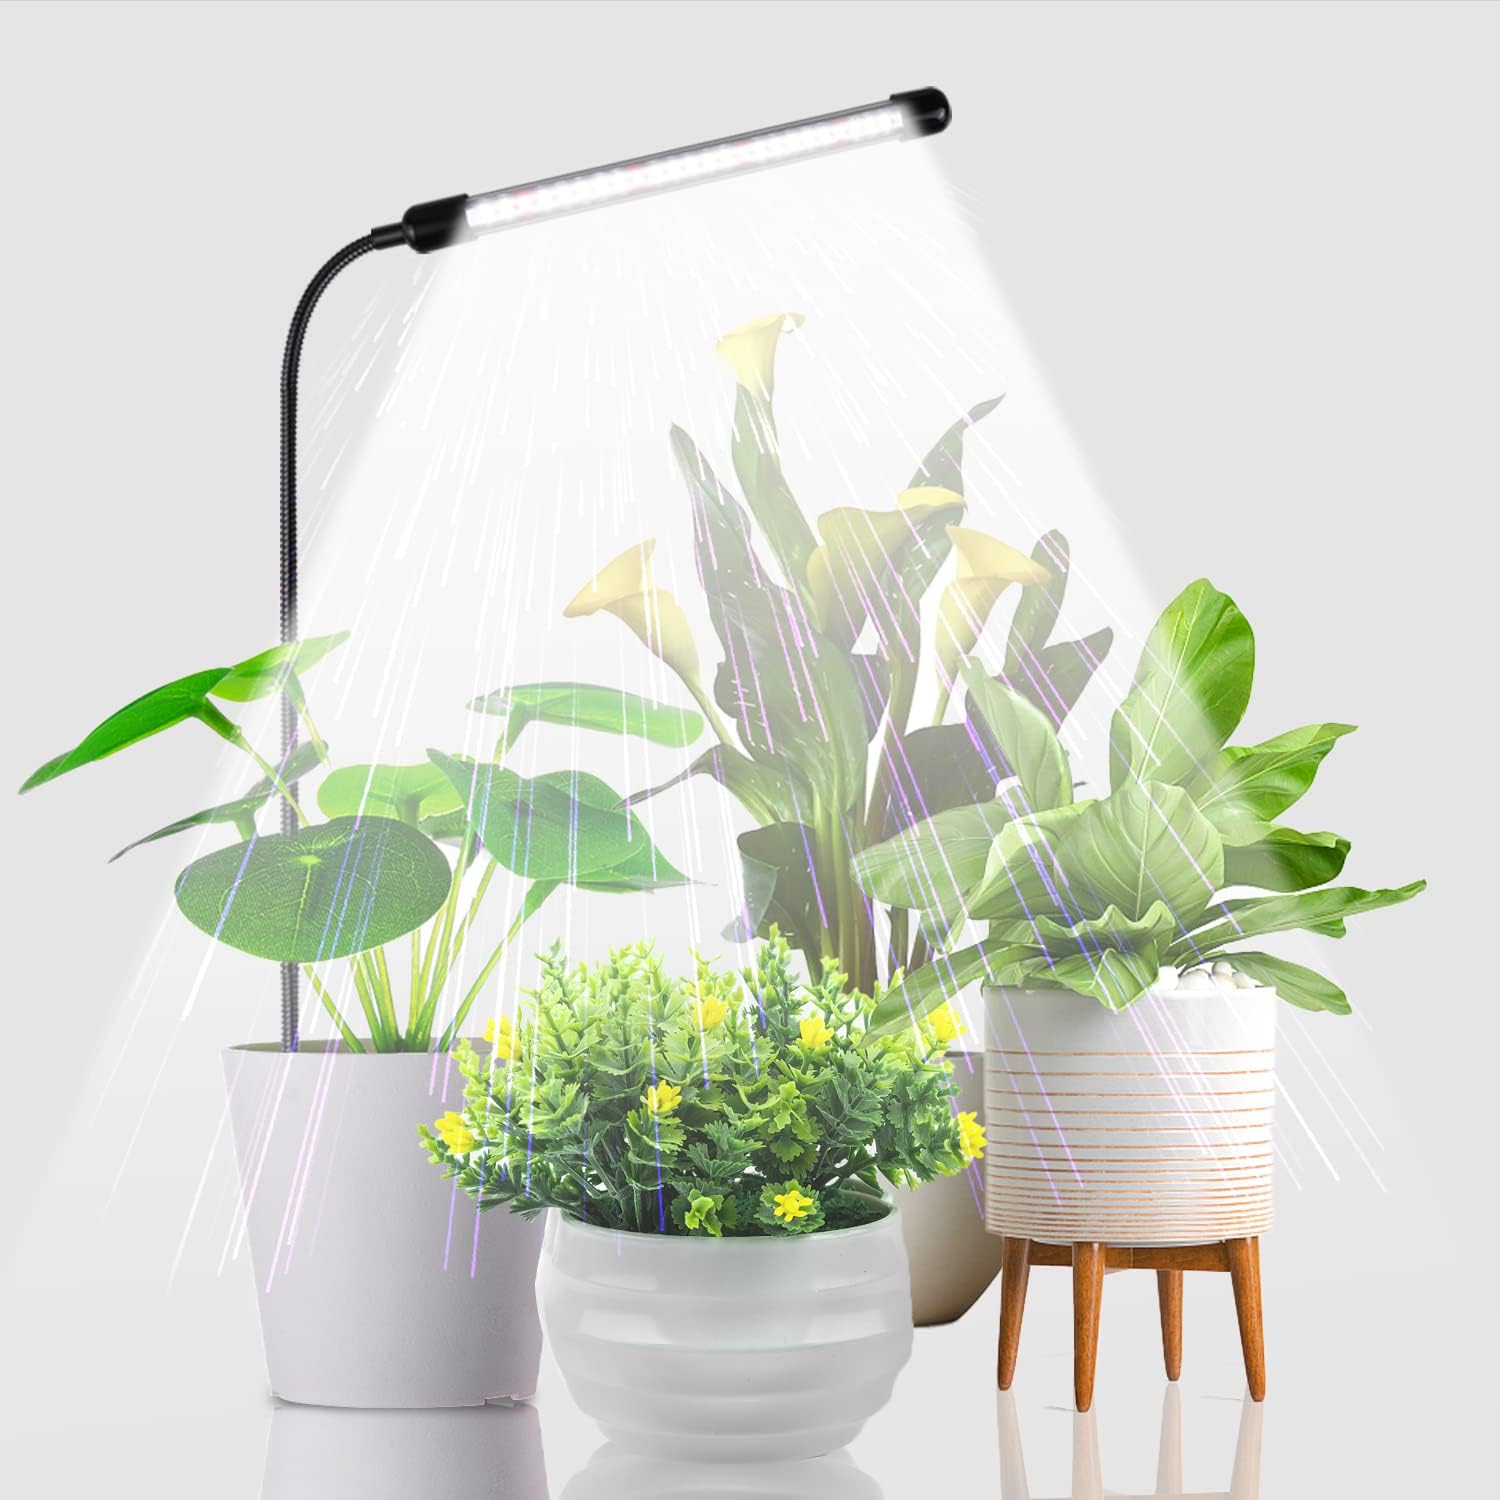 Juhefa Grow Light for Indoor Plants Growing, 6000K [...]